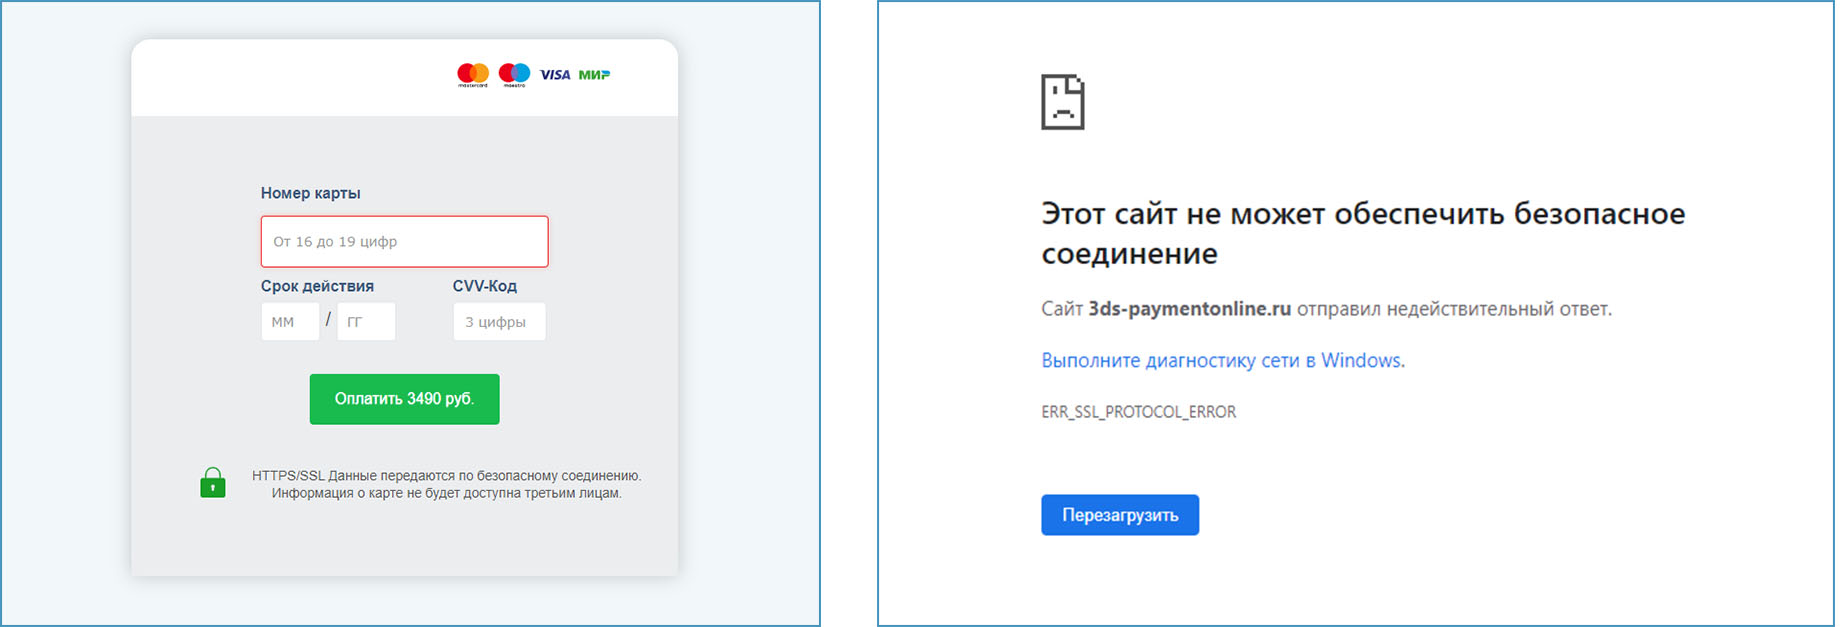 Фишинговая форма оплаты работает без Яндекс ДНС и не работает и при включенном сервисе